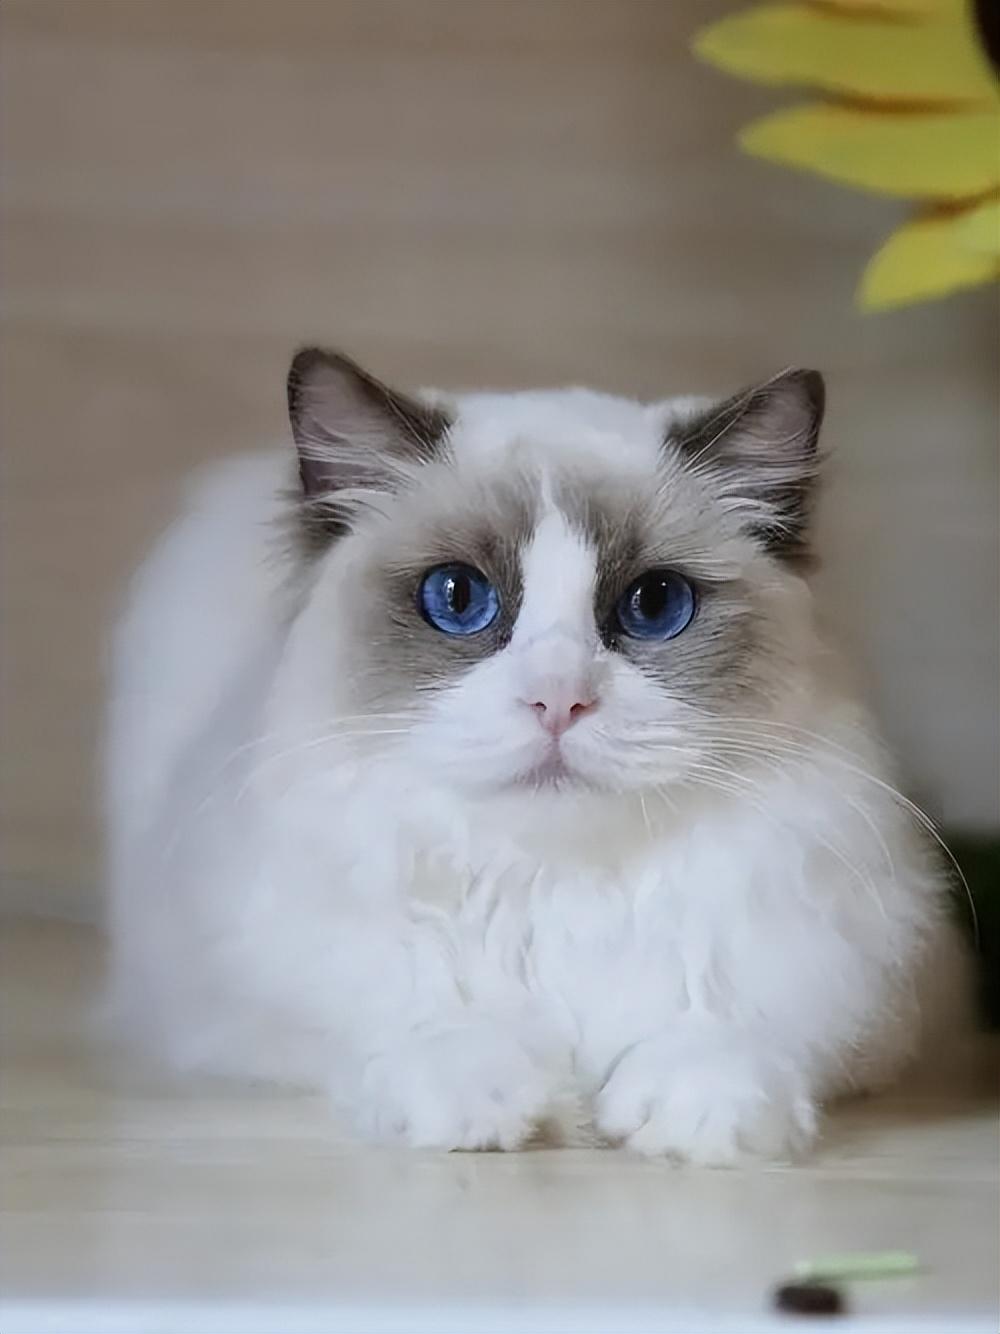 尾巴等重点色部位颜色最深与所有布偶猫一样蓝双布偶猫由蓝白两种颜色